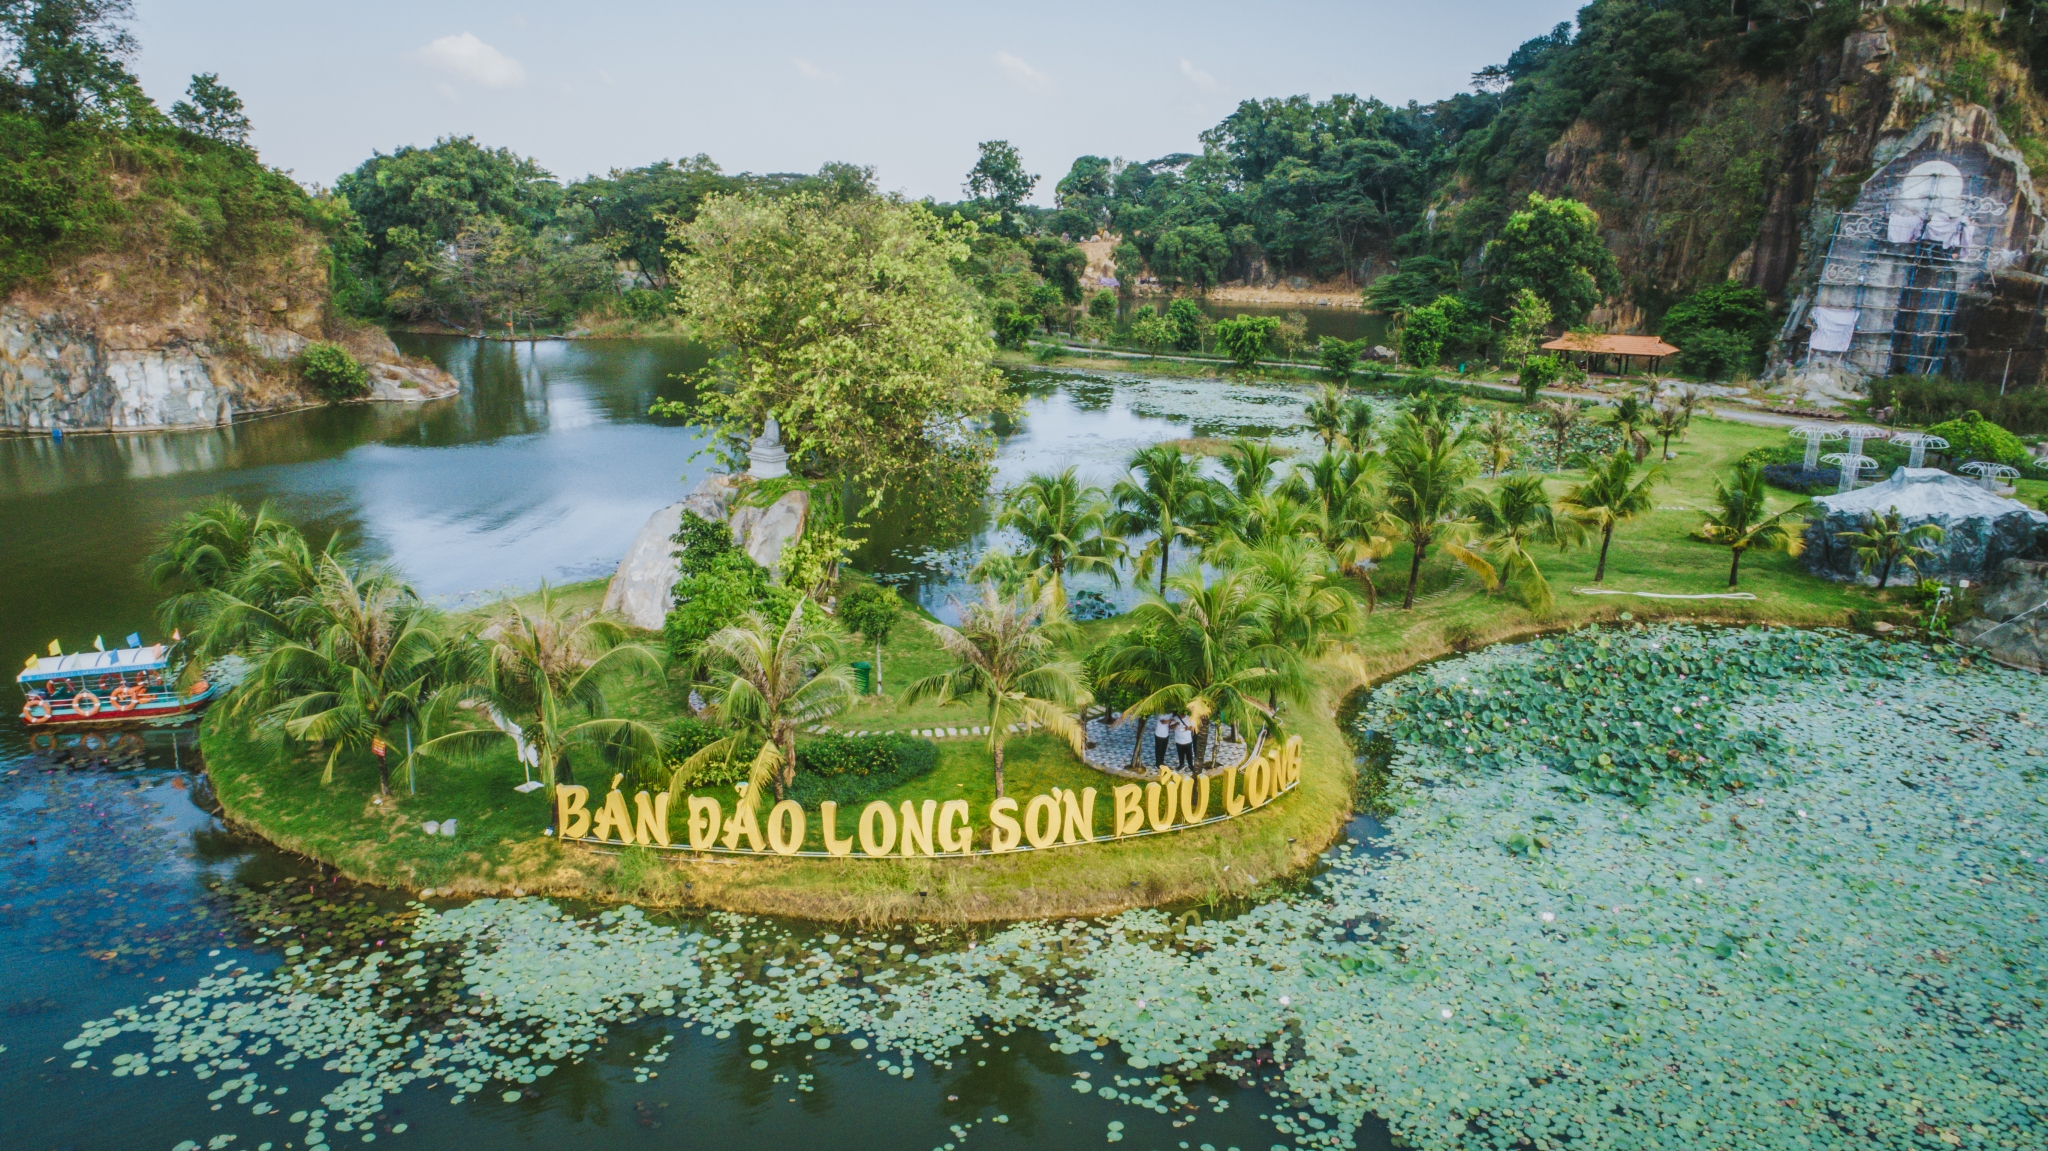 Bán đảo Long Sơn